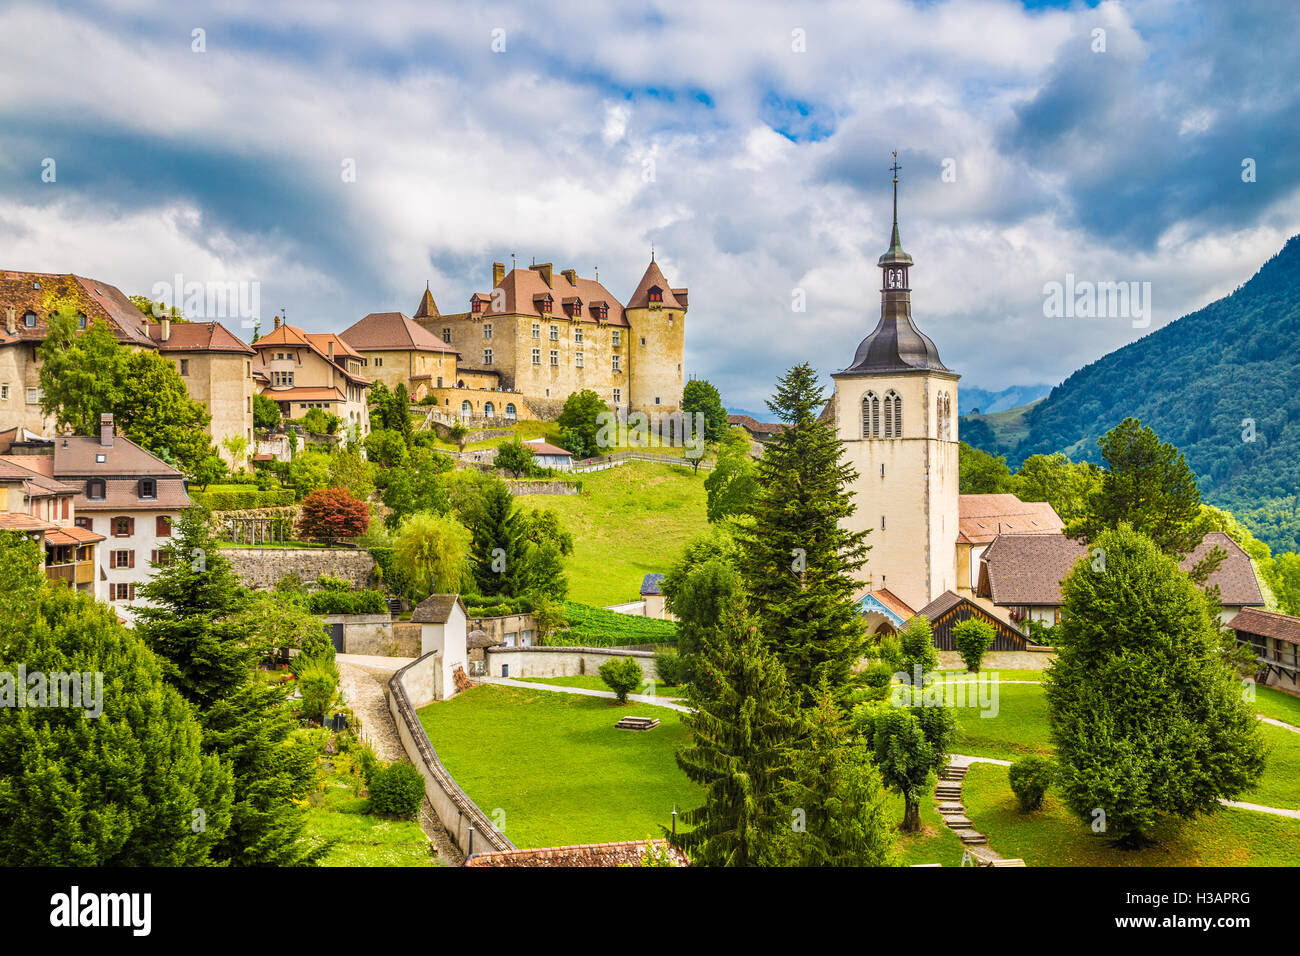 Belle vue sur la ville médiévale de Gruyères, accueil de la célèbre Le fromage gruyère, canton de Fribourg, Suisse Banque D'Images